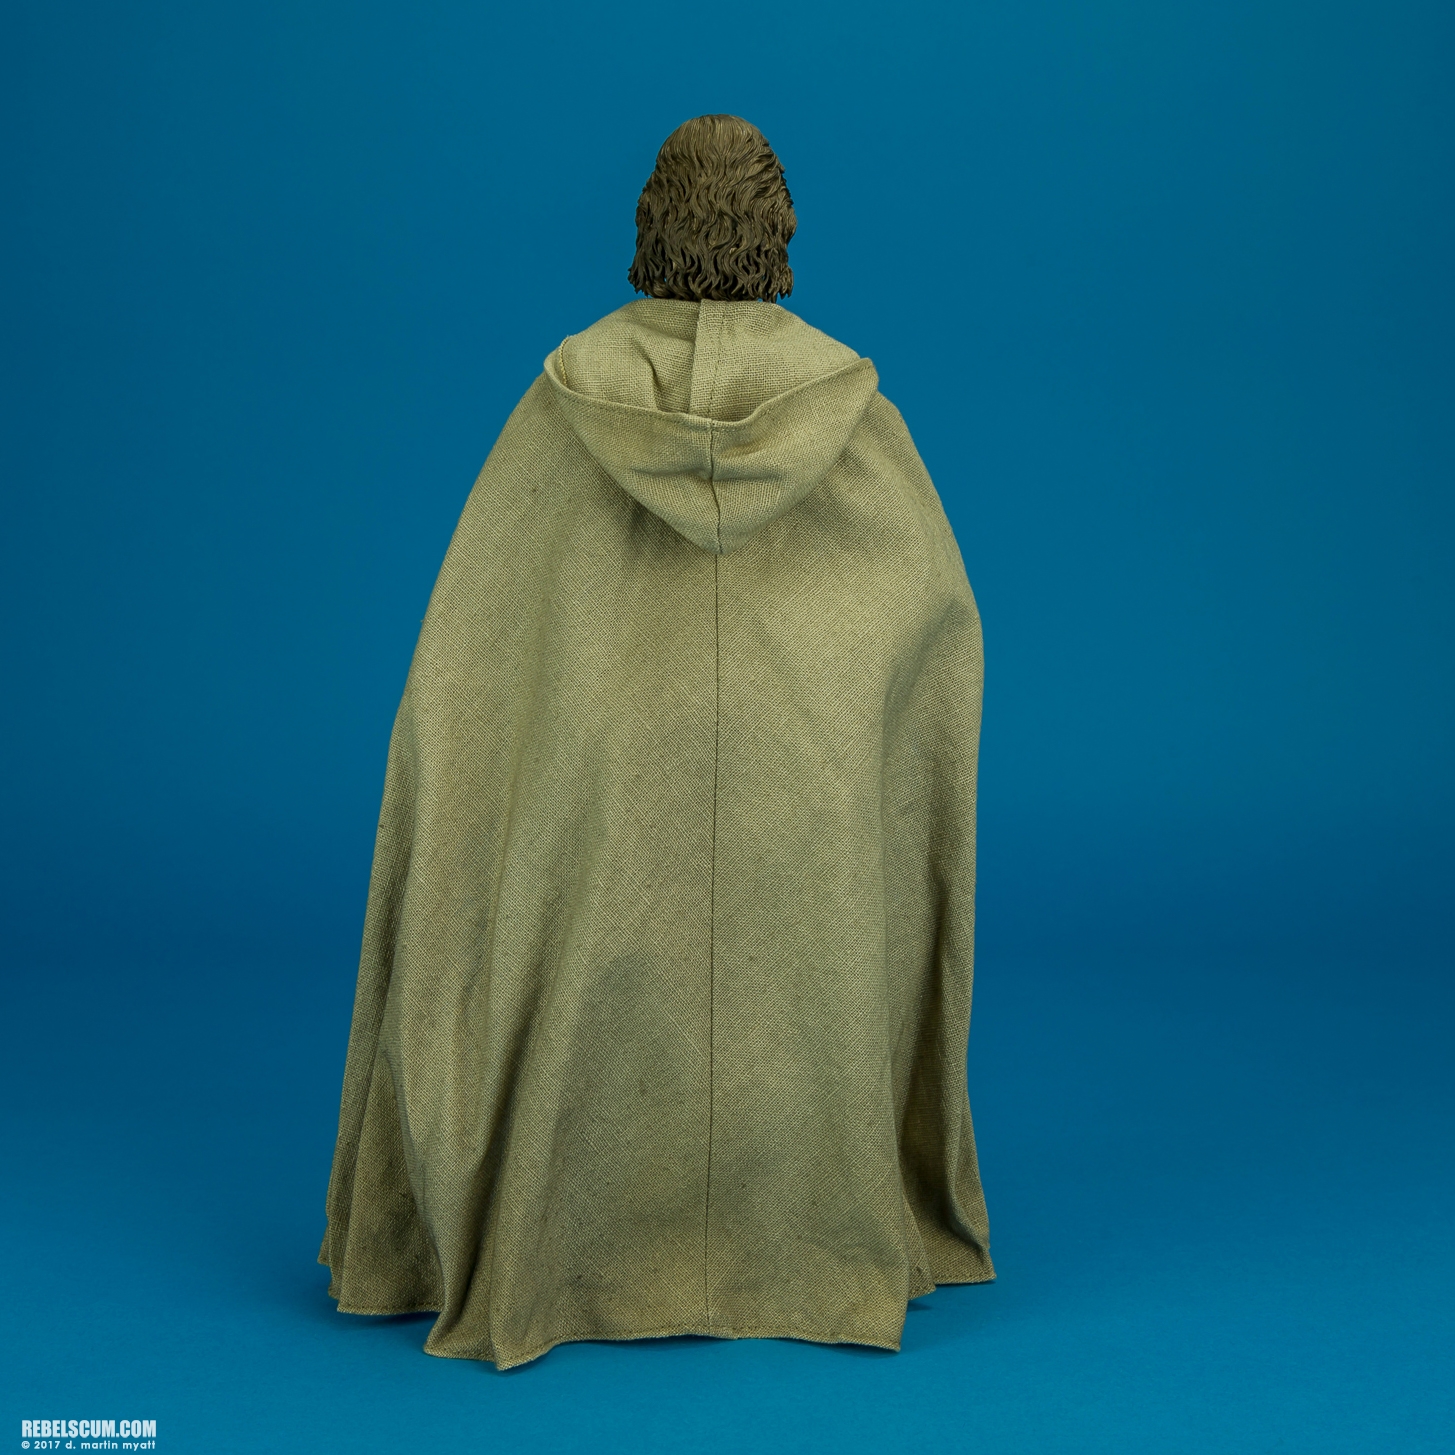 MMS390-Luke-Skywalker-The-Force-Awakens-Hot-Toys-008.jpg